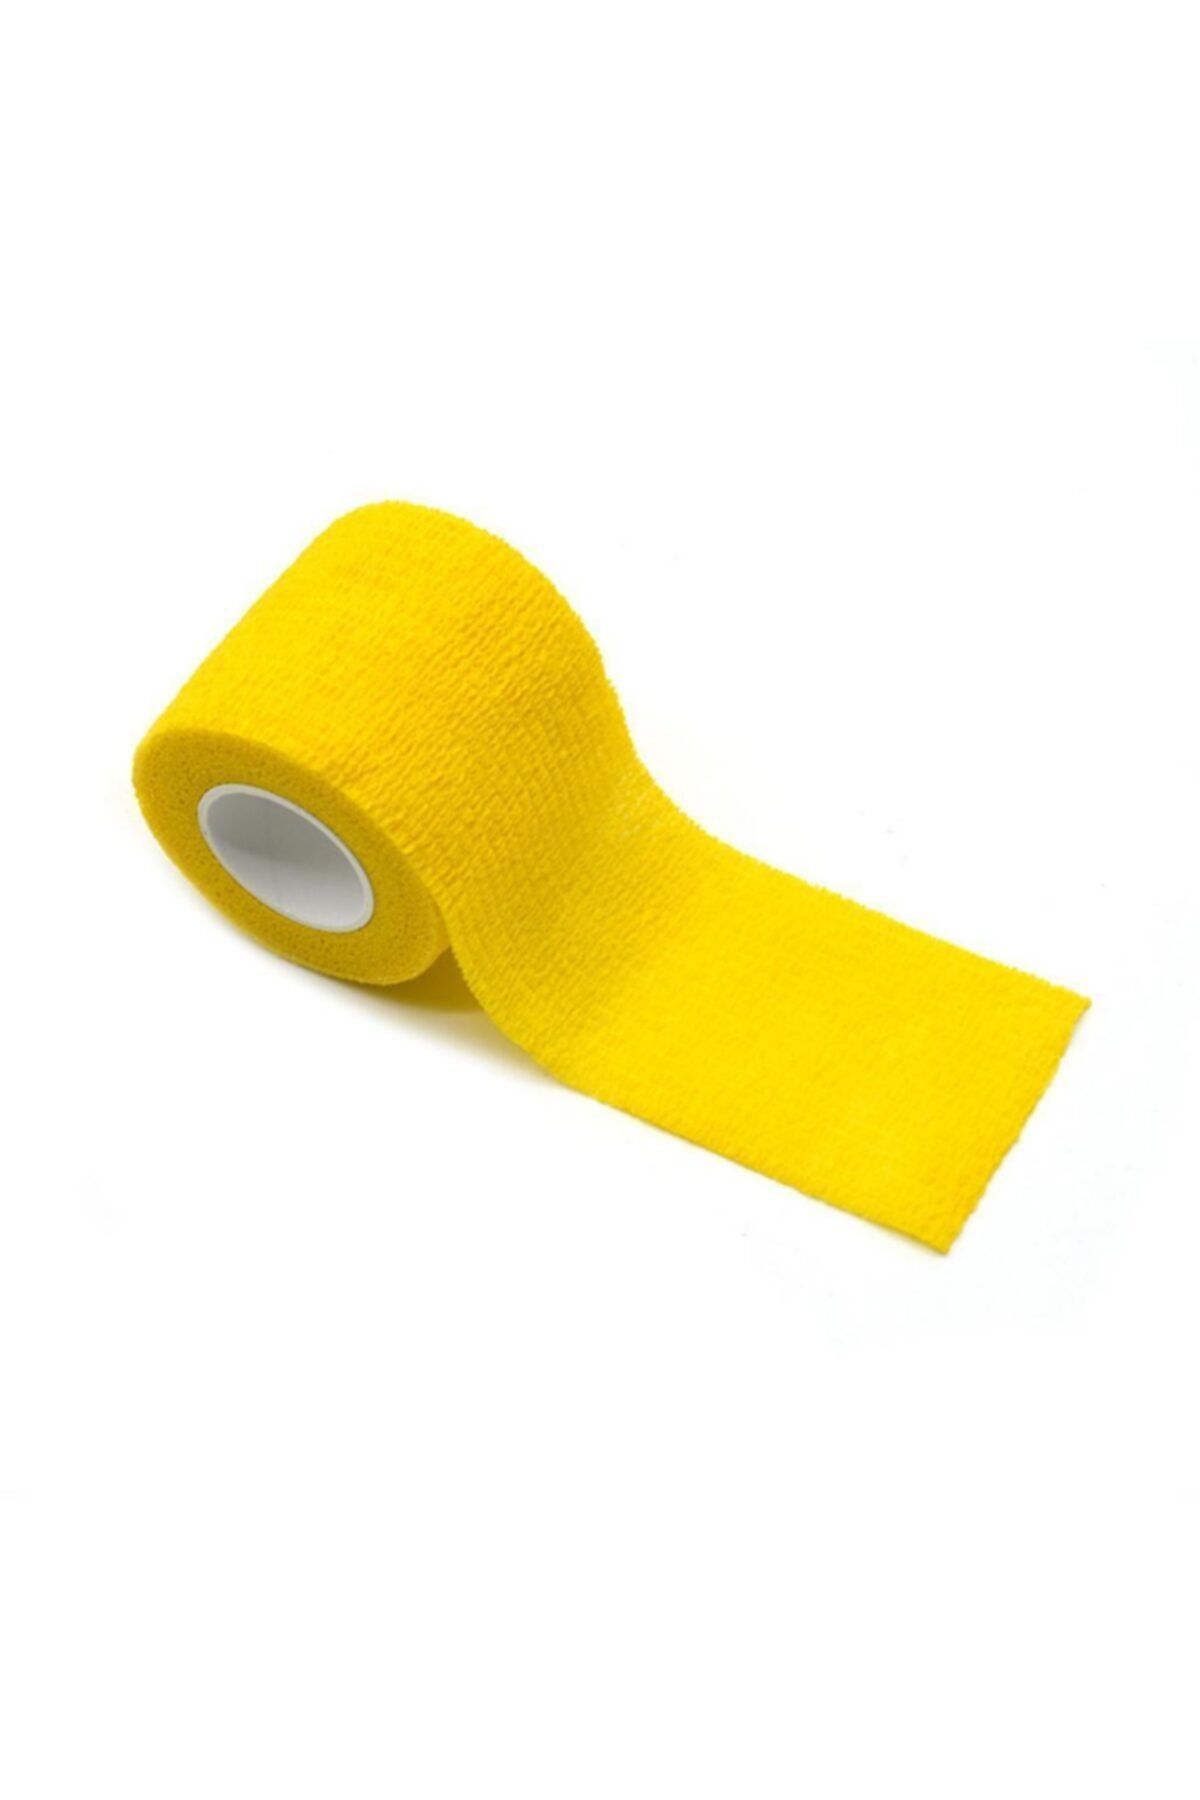 Iron Sarı Kendinden Yapışkanlı Bandaj Koban 5cmx4.5m